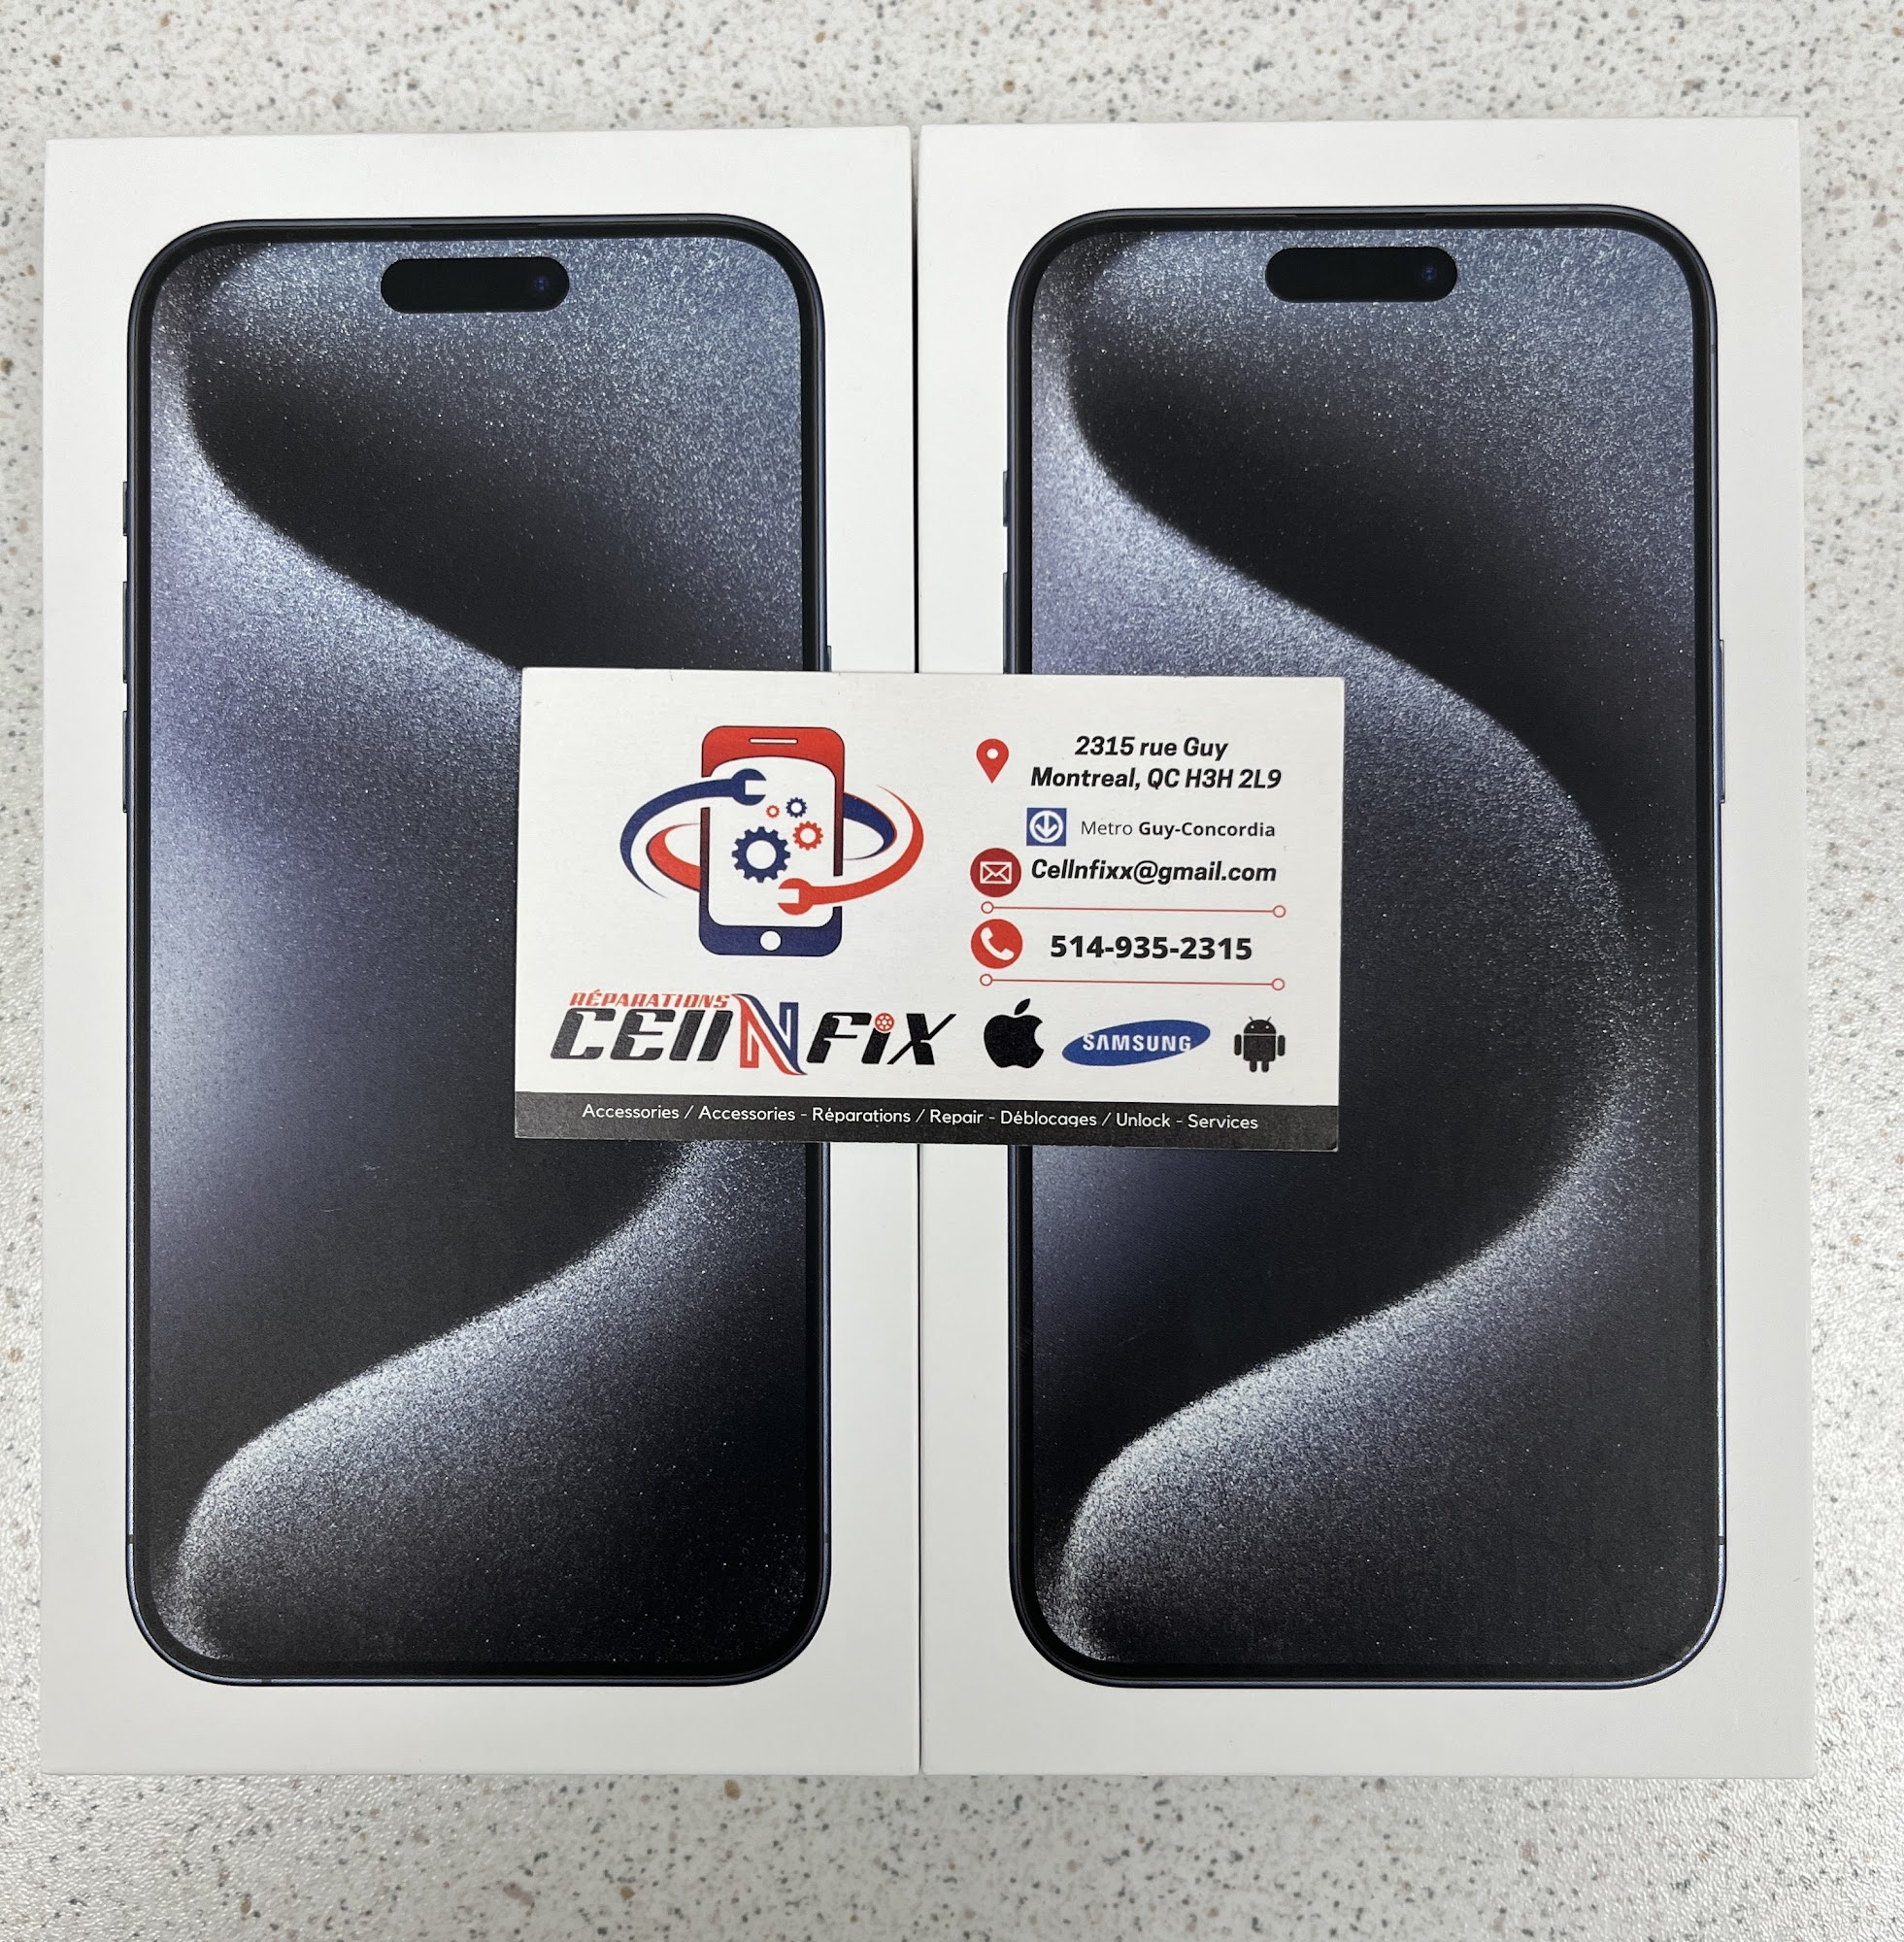 Réparations CELLNFIX — iPhone Repair Specialist | iPad Repair | Samsung Repair | Phone Repair — Service